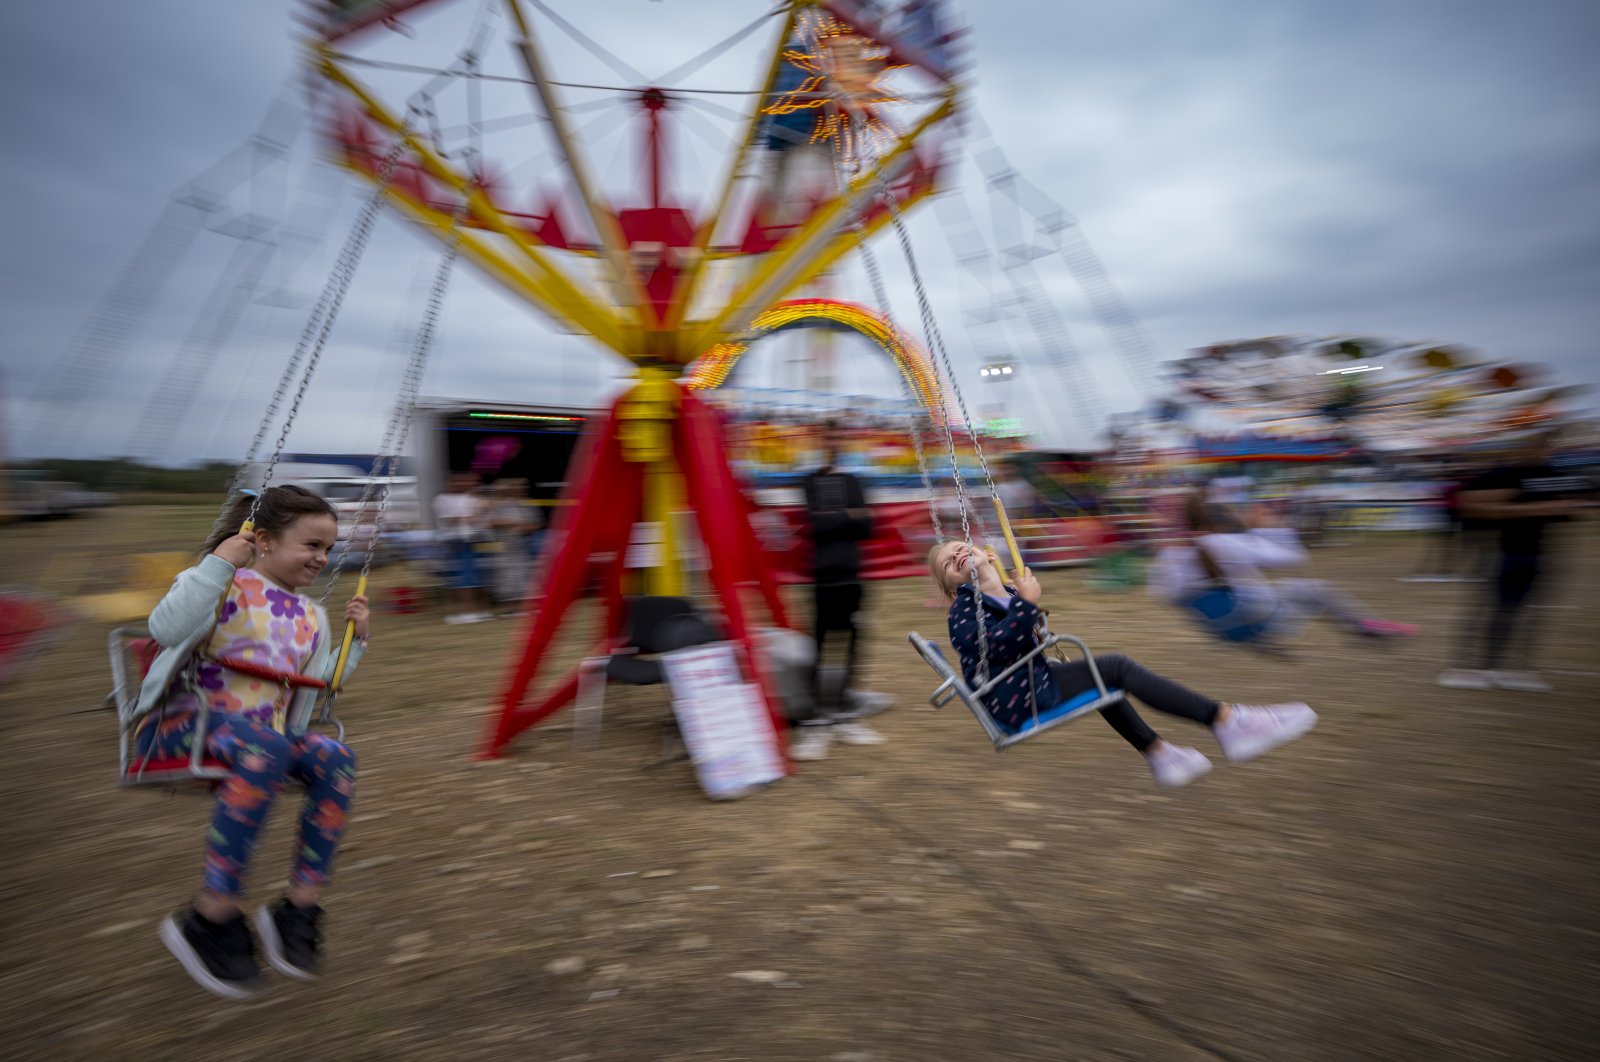 Children enjoy a swing ride at a fair in Hagioaica, Romania, Sept. 16, 2023. (AP Photo)